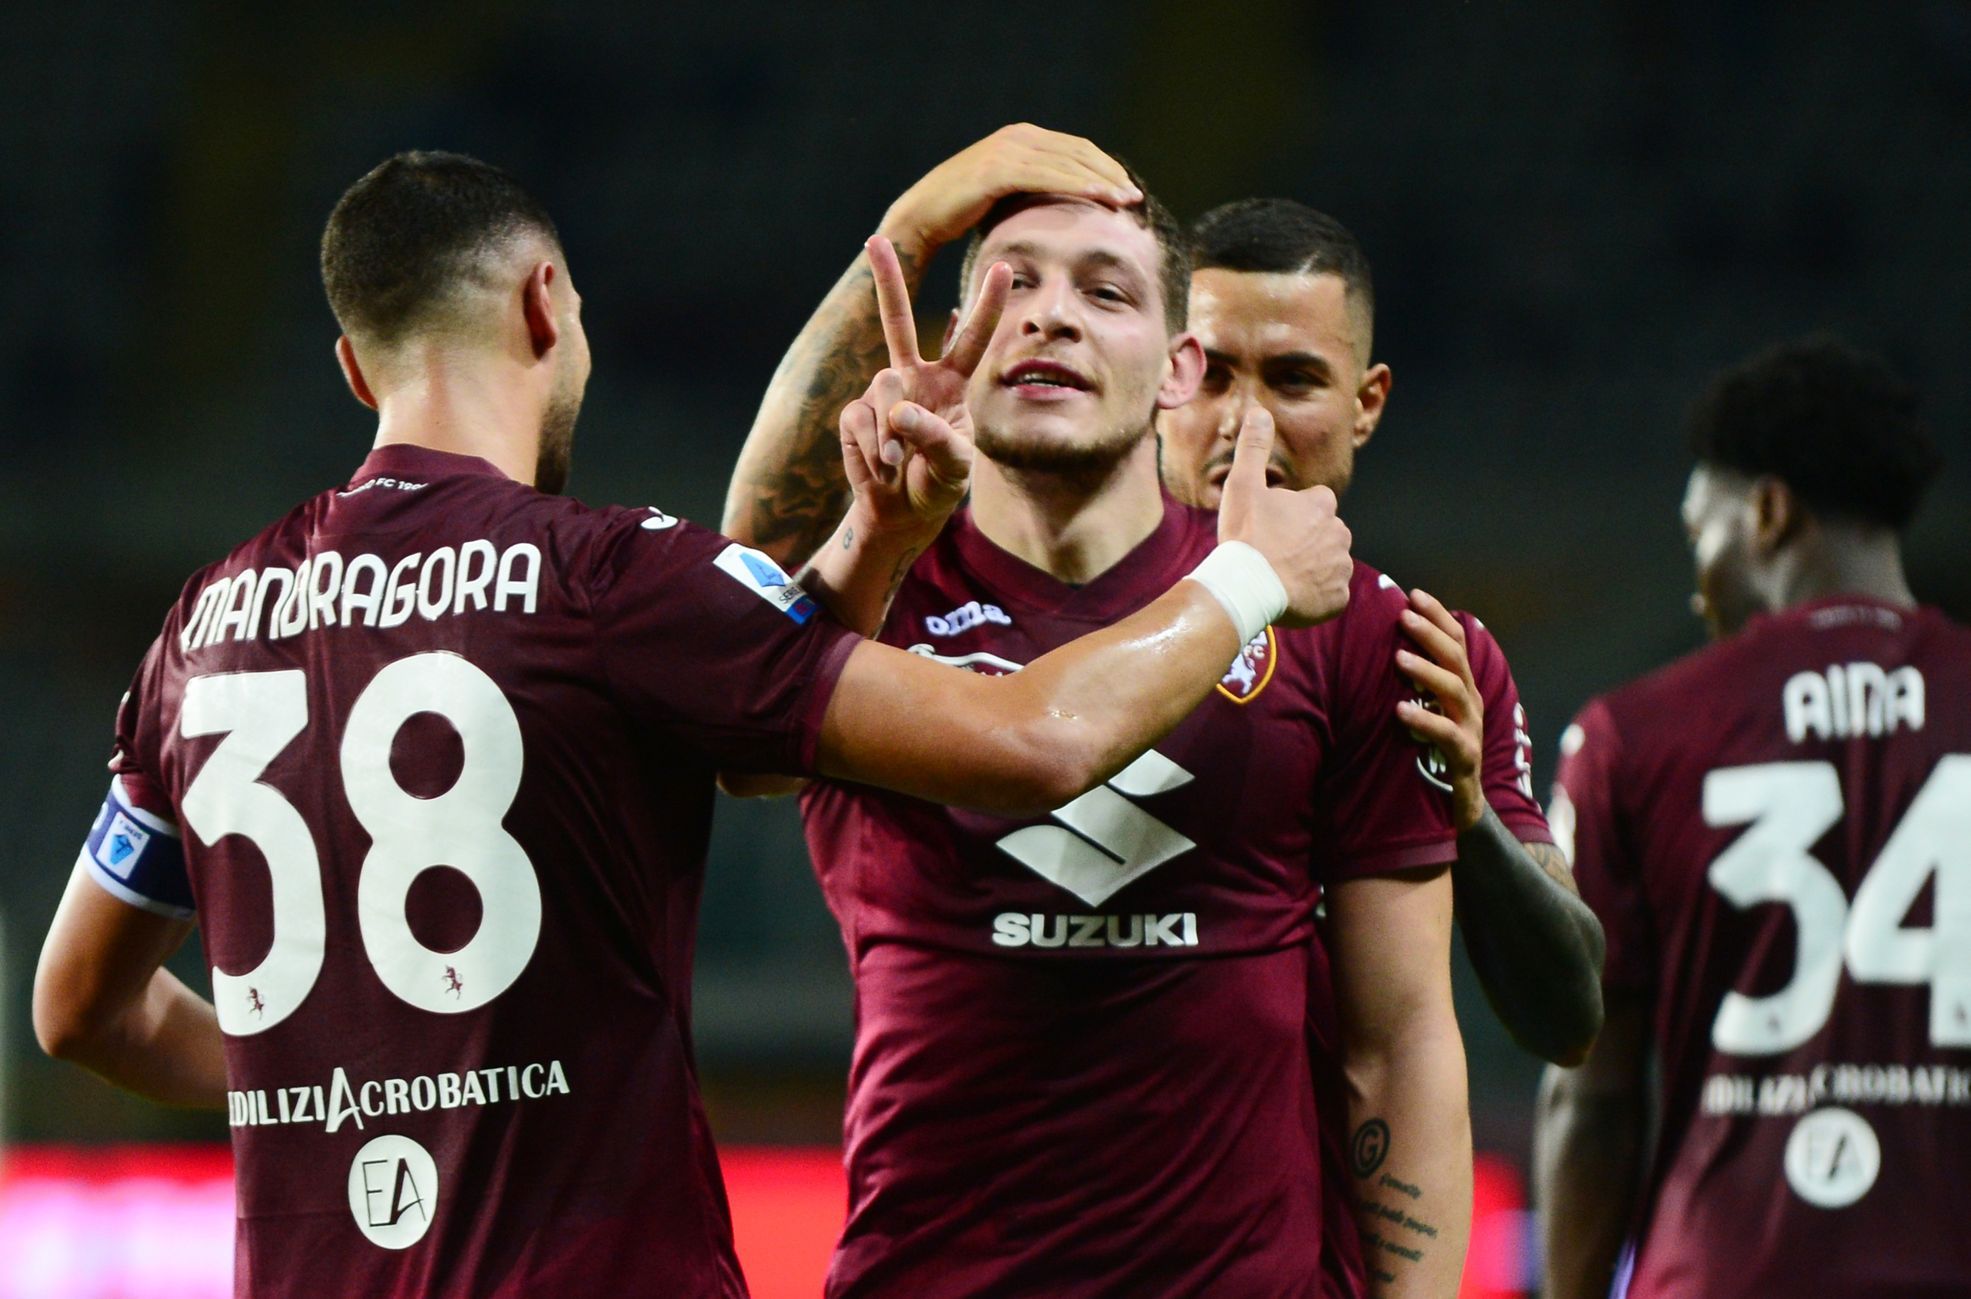 Zima è uscito vittorioso dal duello ceco, l’FC Turin ha battuto il Verona